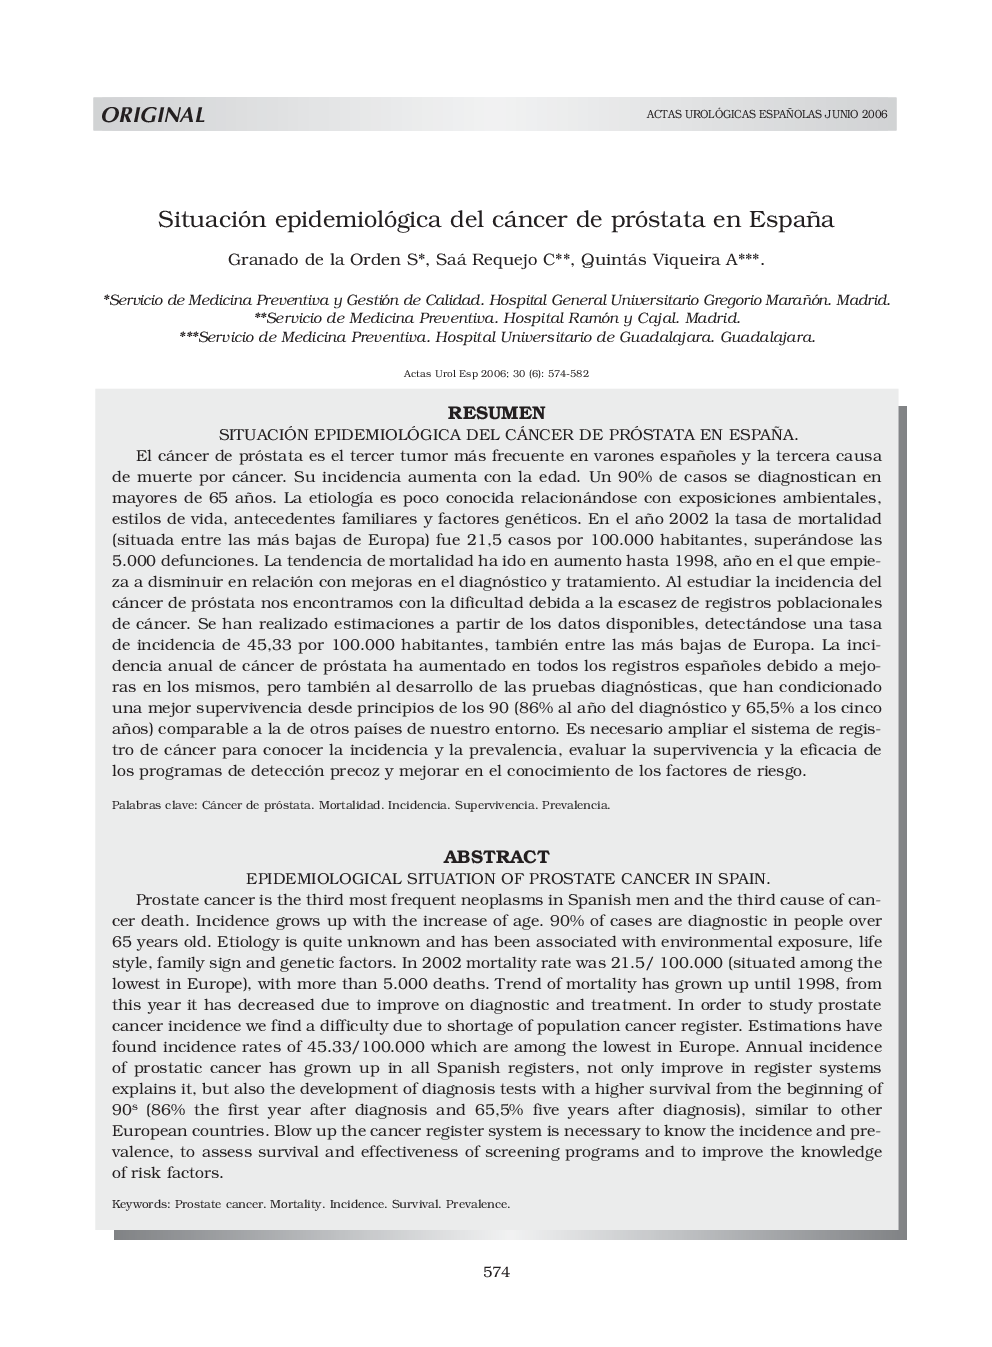 Situación epidemiológica del cáncer de próstata en España